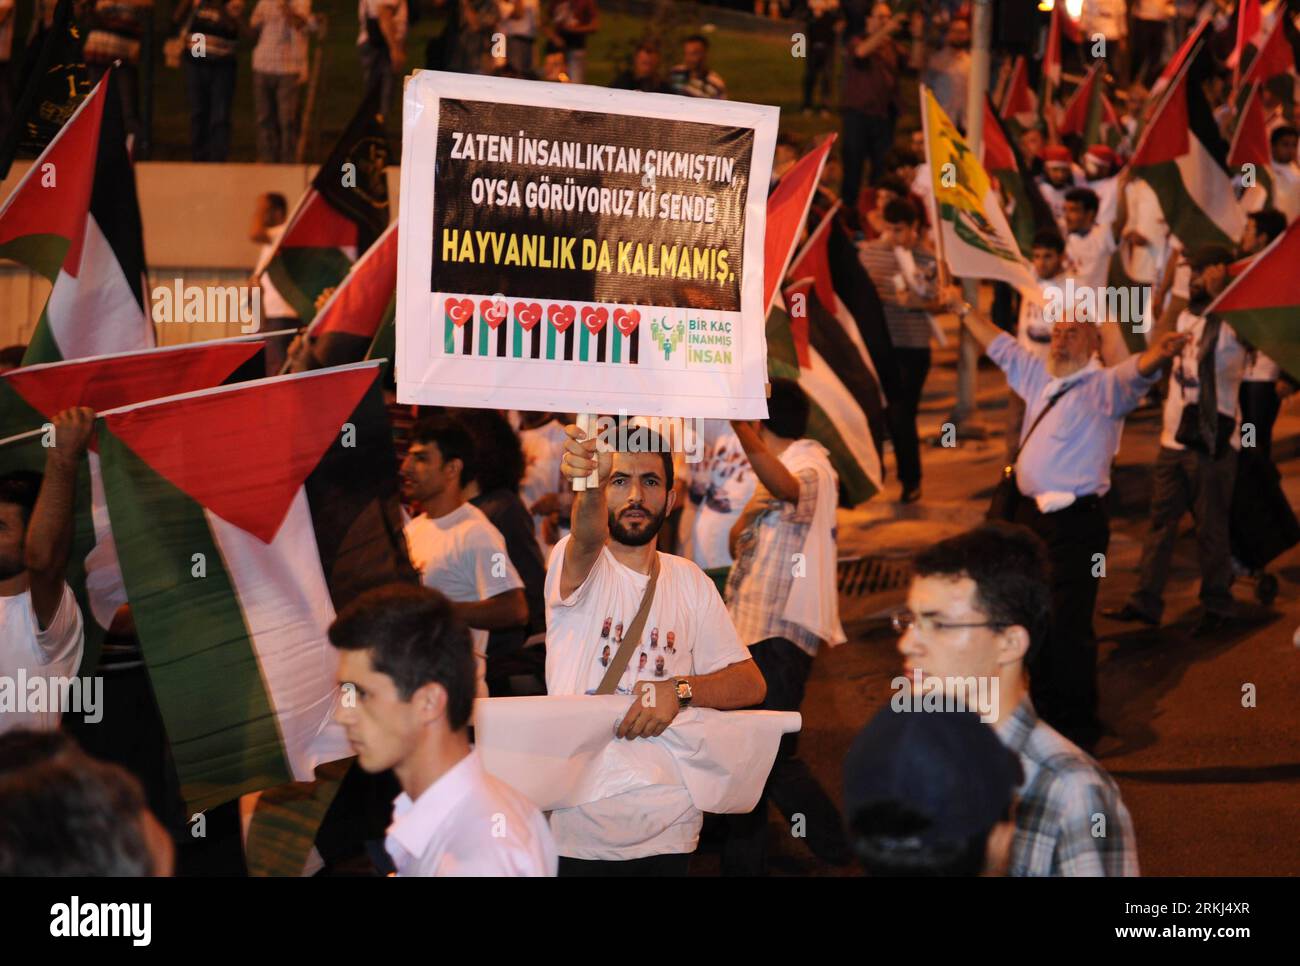 Bildnummer : 55985692 Datum : 15.09.2011 Copyright : imago/Xinhua (110916) -- ISTANBUL, 16 septembre 2011 (Xinhua) -- Participez à une manifestation pour protester contre Israël, à Istanbul, Turquie, le 15 septembre 2011. Plus de 1 000 personnes ont défilé jeudi à Istanbul pour protester contre l'apparition de l'équipe israélienne Maccabi tel Aviv dans la ville pour rivaliser avec Besiktas de Turquie dans l'UEFA Europa League. (Xinhua/Ma Yan) (axy) TURQUIE-ISTANBUL-ISRAËL-PROTEST PUBLICATIONxNOTxINxCHN Gesellschaft Politik Nahostkonflikt Demo Protest Premiumd xns x0x 2011 quer 55985692 Date 15 09 2011 Copyright Imag Banque D'Images